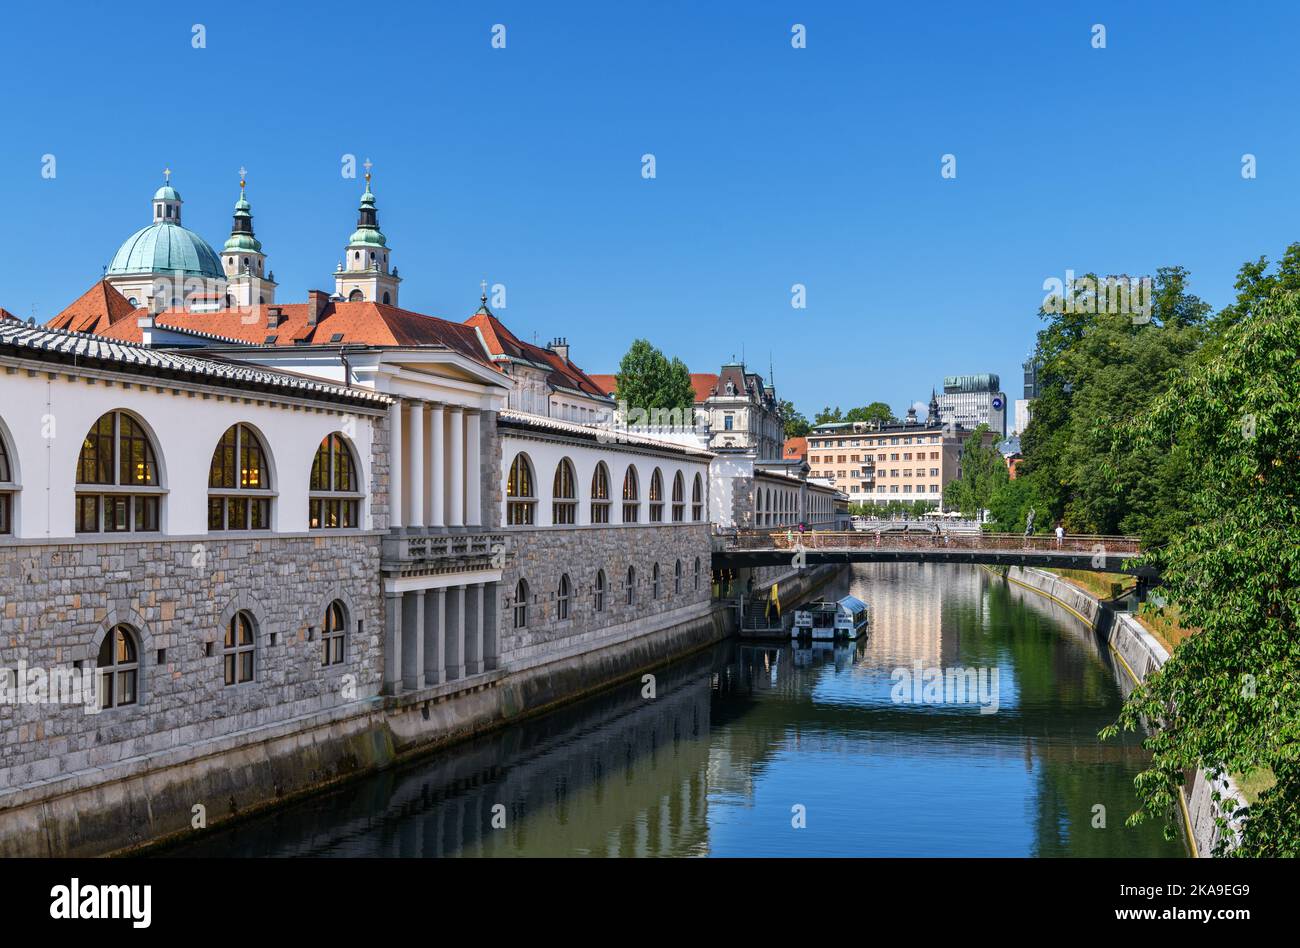 La rivière de la rivière de la rivière de la rivière (le pont du Dragon) (Zmajski Most) dans la vieille ville de Ljubljana, Slovénie Banque D'Images